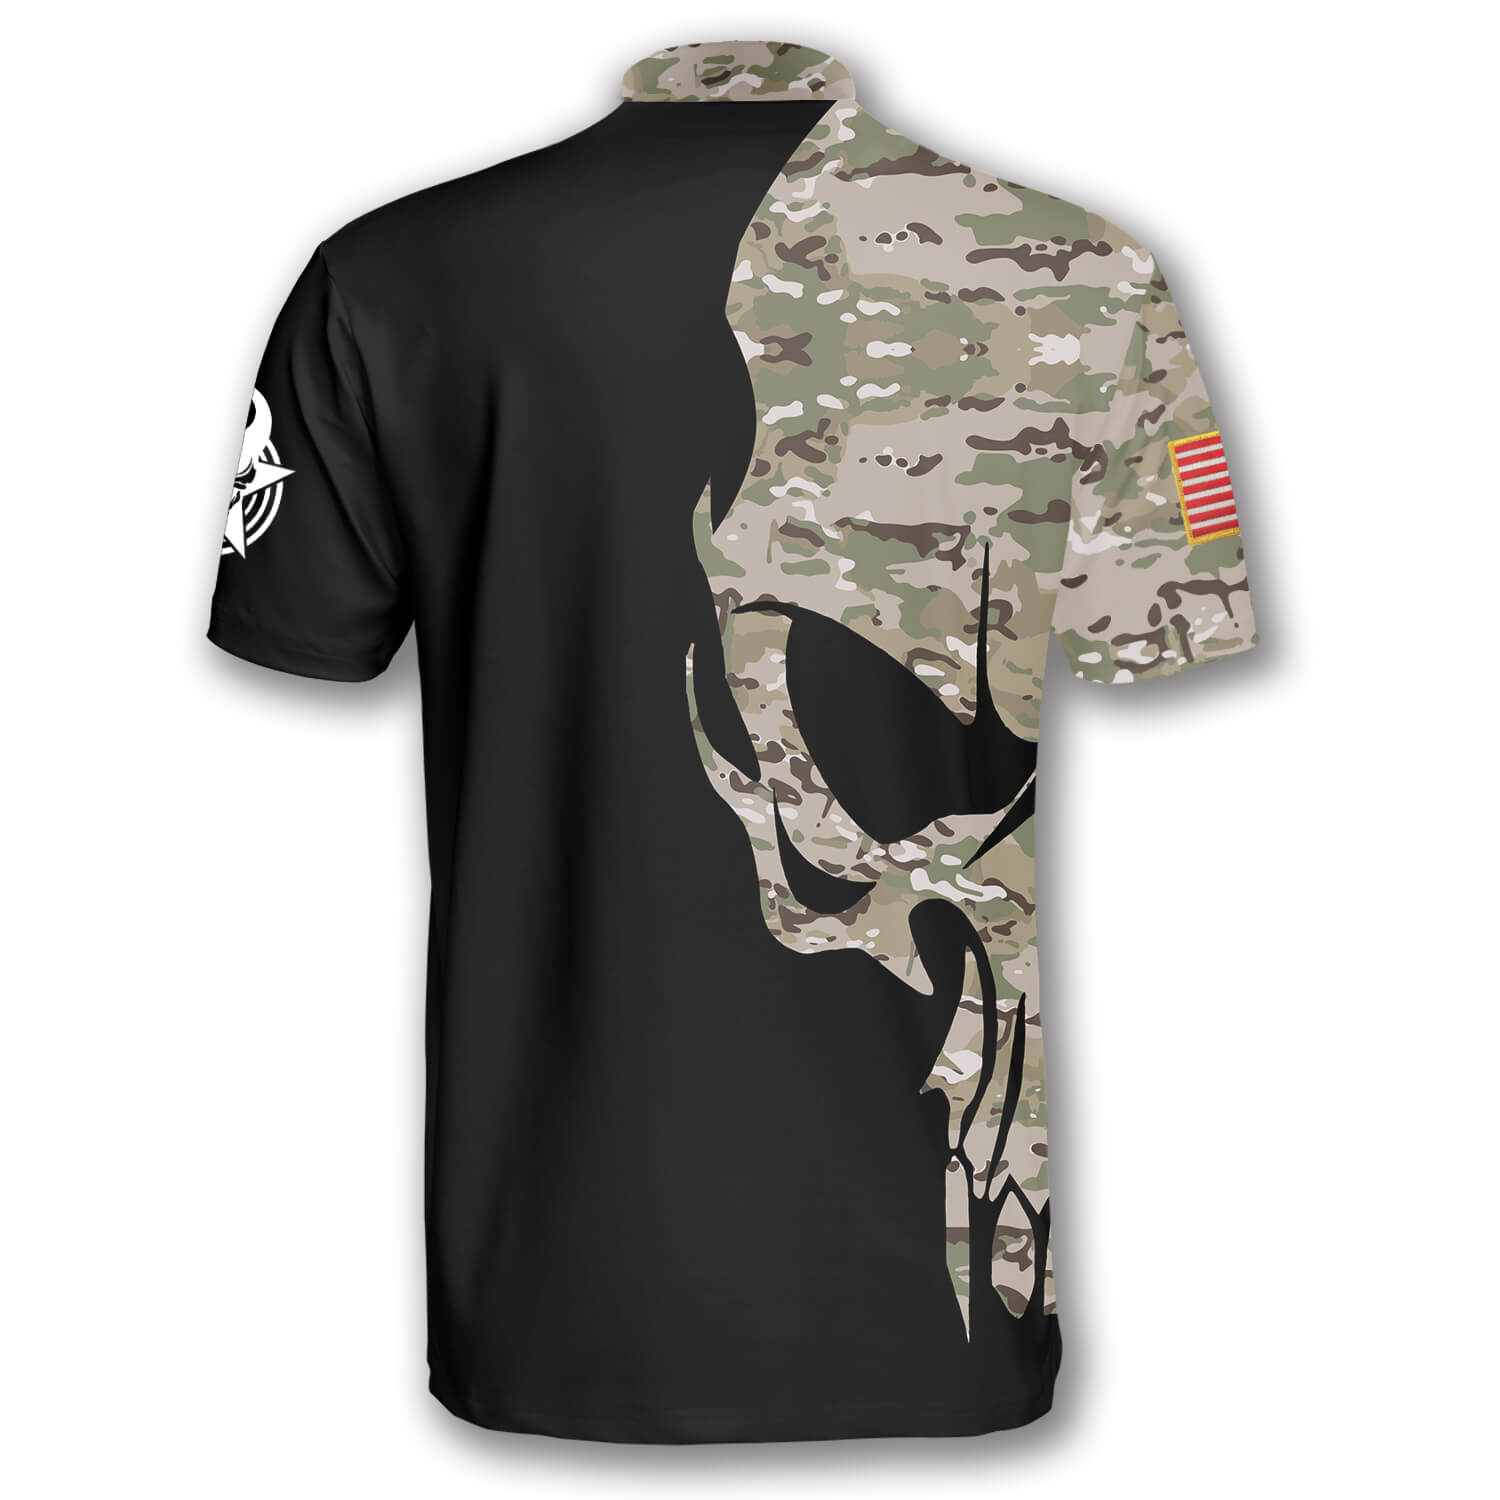 Skull Camouflage Custom Billiard Jerseys for Men/ Idea Gift for Billiard Player/ Skull Shirt